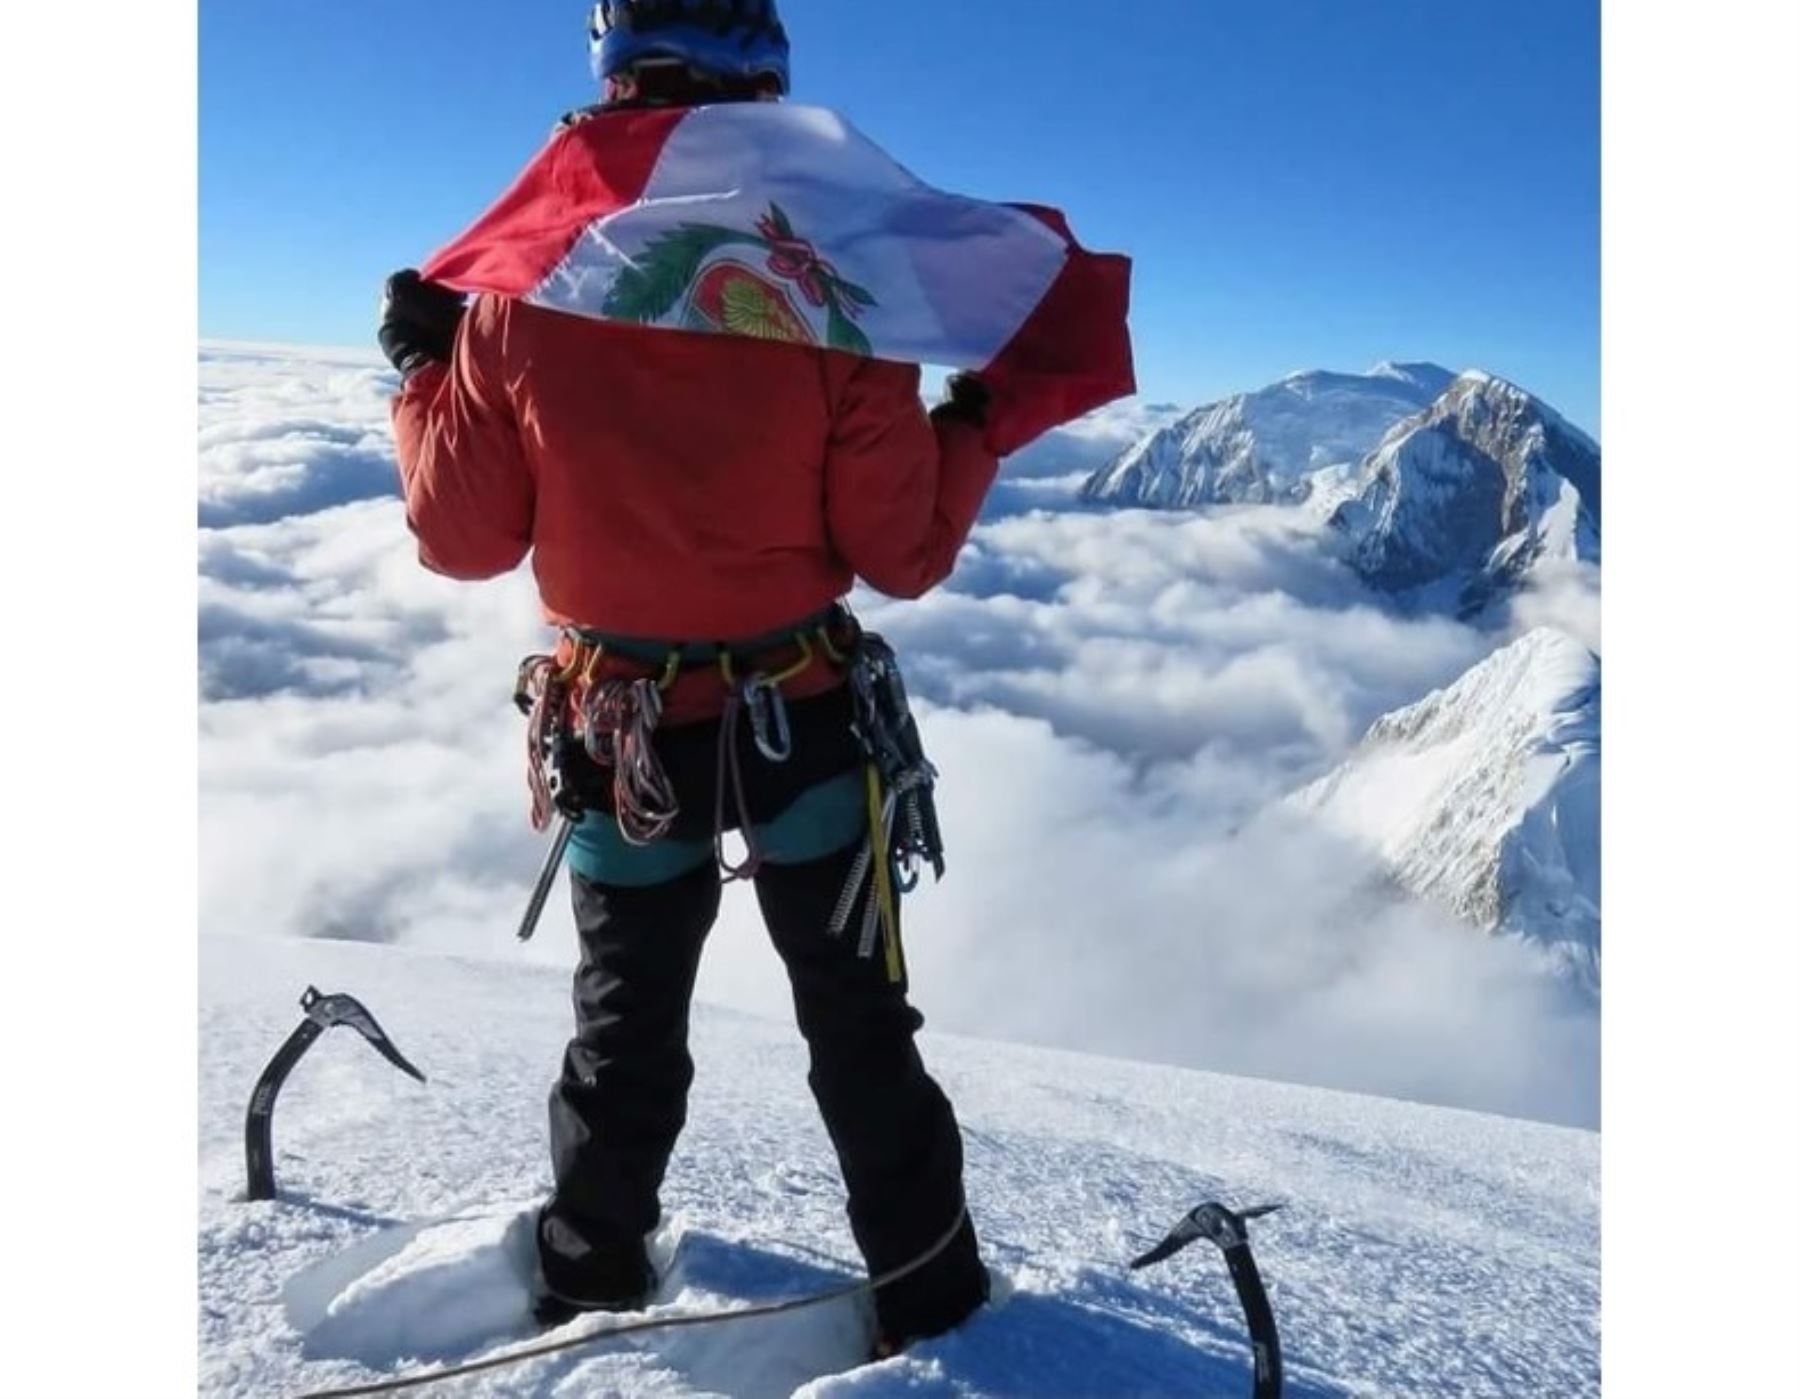 Andinista peruano Víctor Rímac conquista la cuarta montaña más alta del mundo, el nevado Lhotse, que forma parte de la cadena Himalaya. Foto: Cortesía Víctor Rímac/Facebook